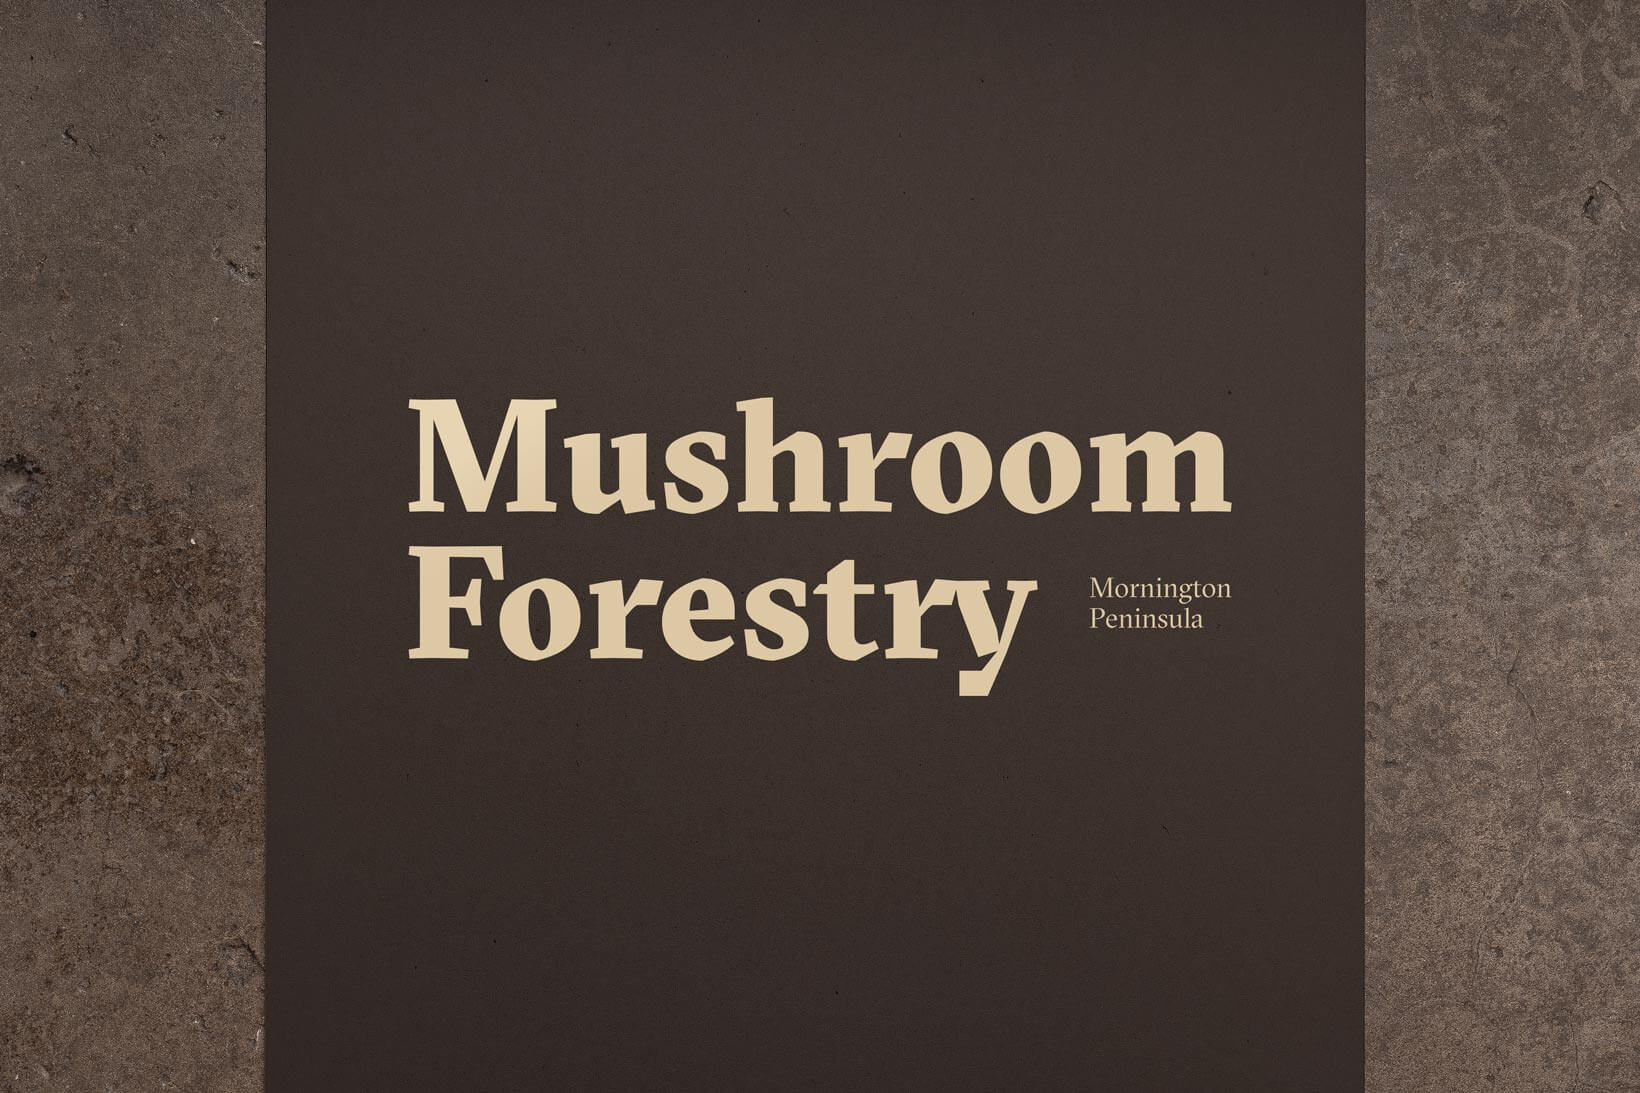 New logotype for Australian brand Mushroom Forestry